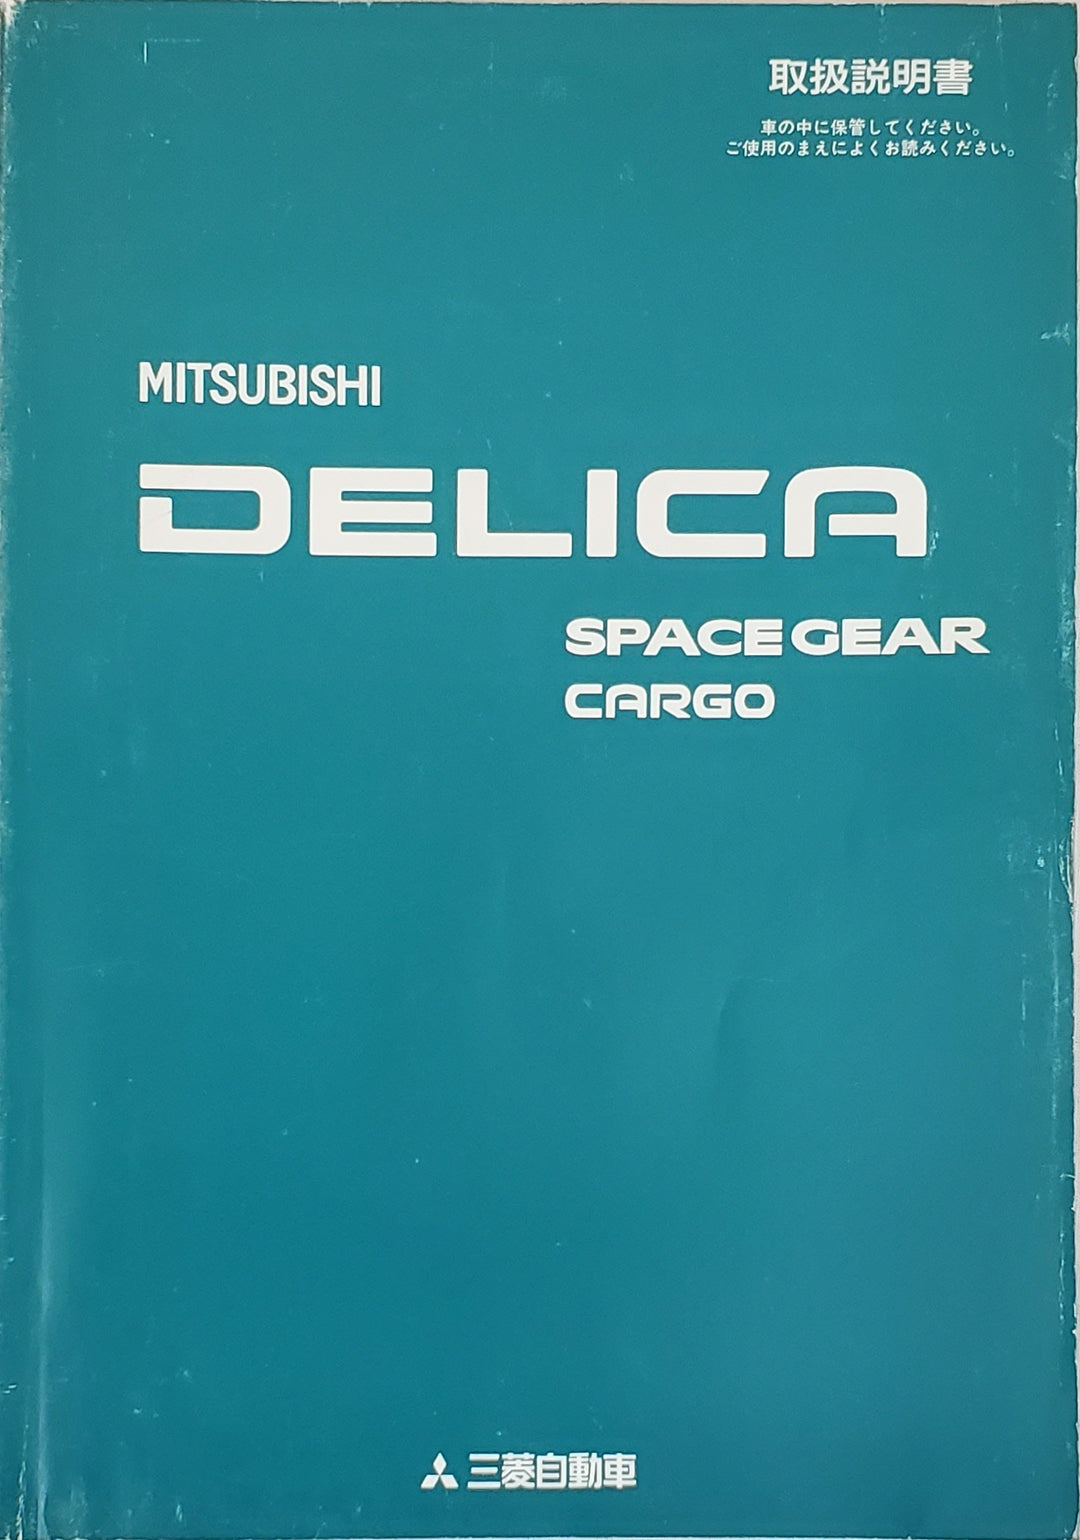 Mitsubishi Delica Spacegear Cargo